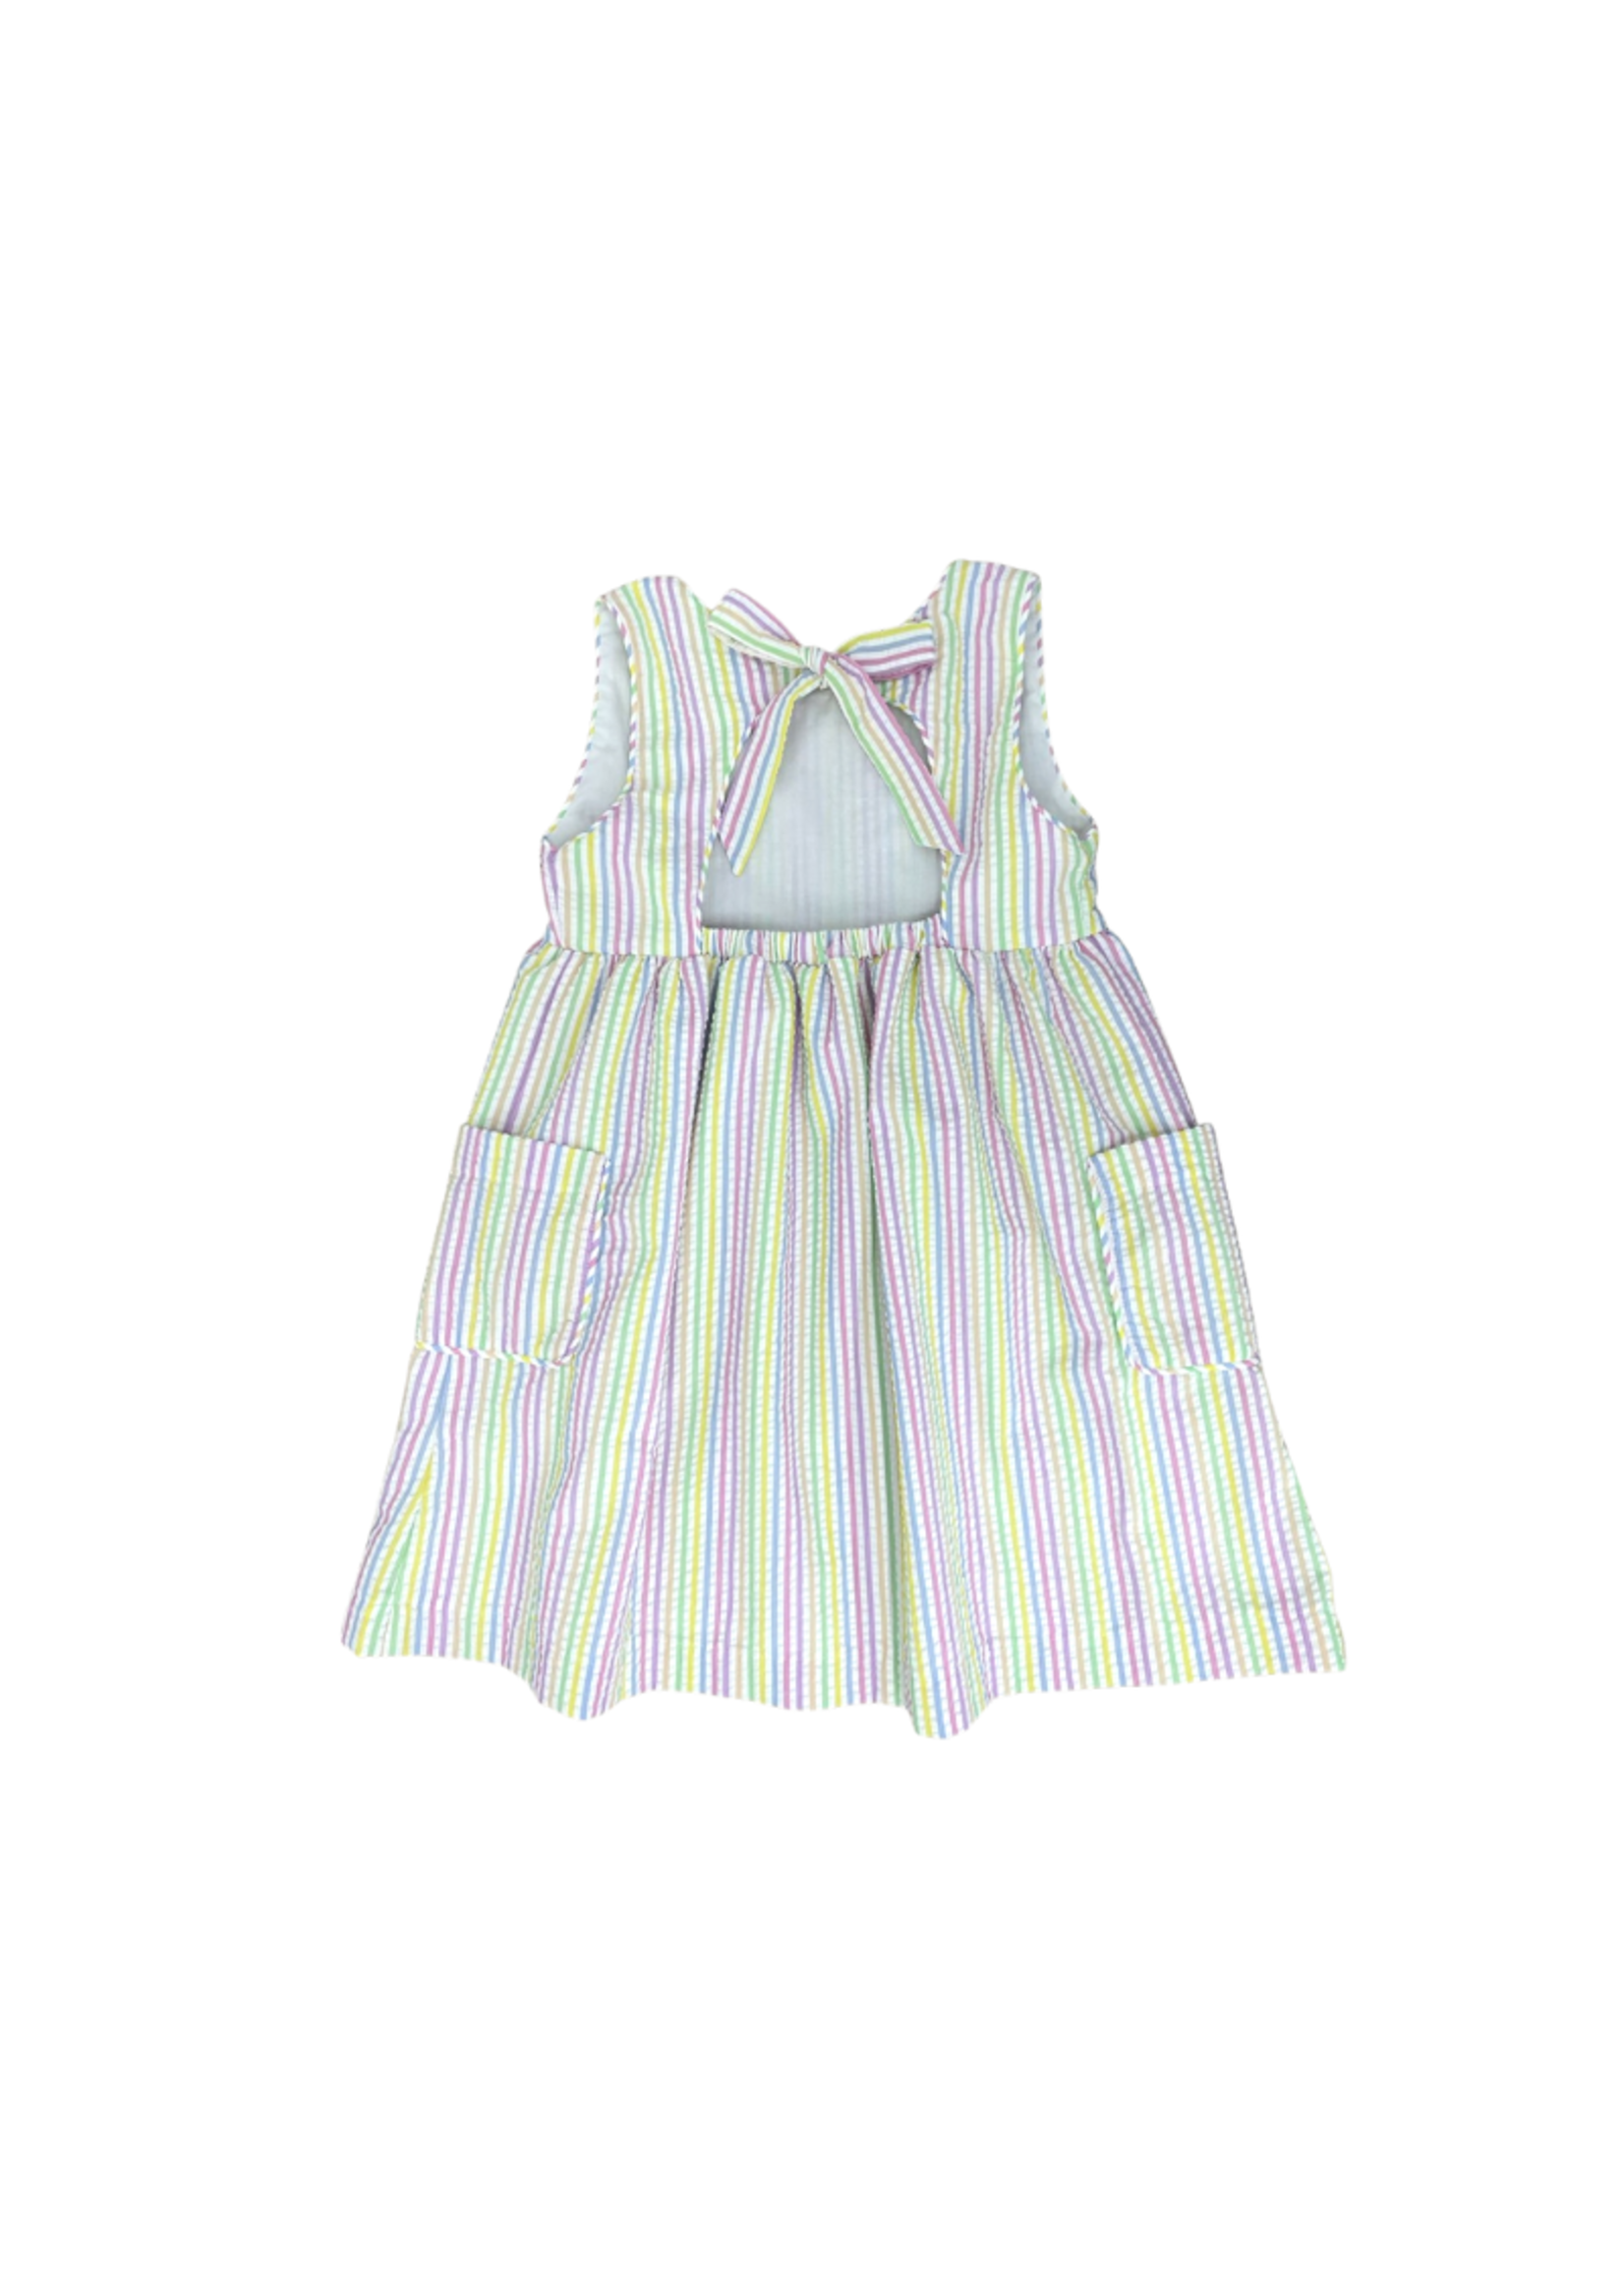 james and lottie Pastel Stripe Seer Maisy Dress